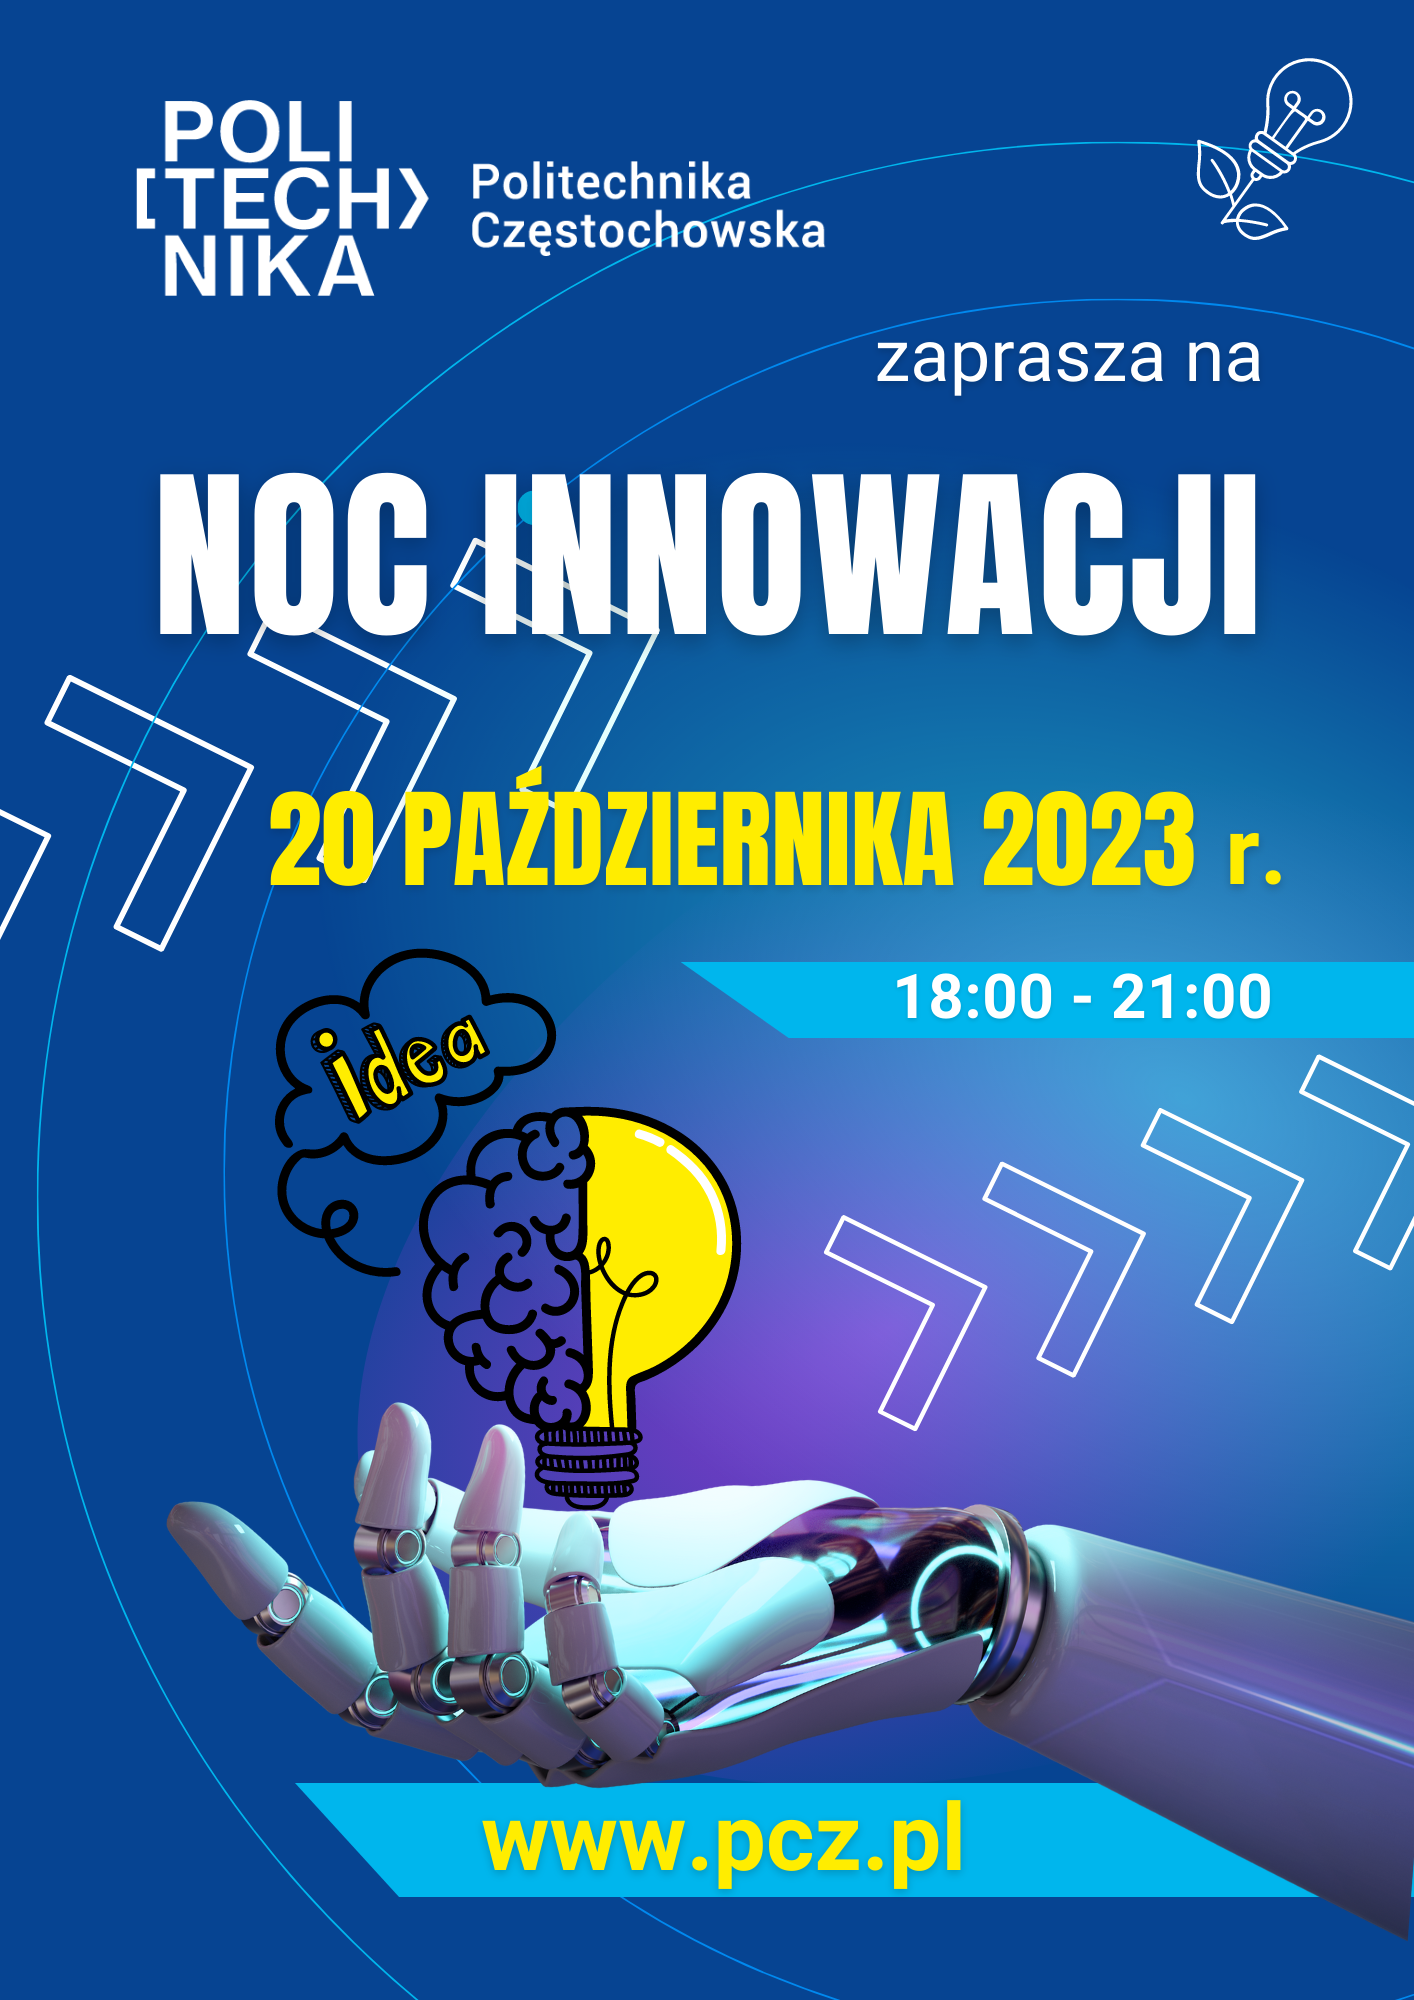 20 października 2023 r. zapraszamy na Politechnikę Częstochowską na NOC INNOWACJI!